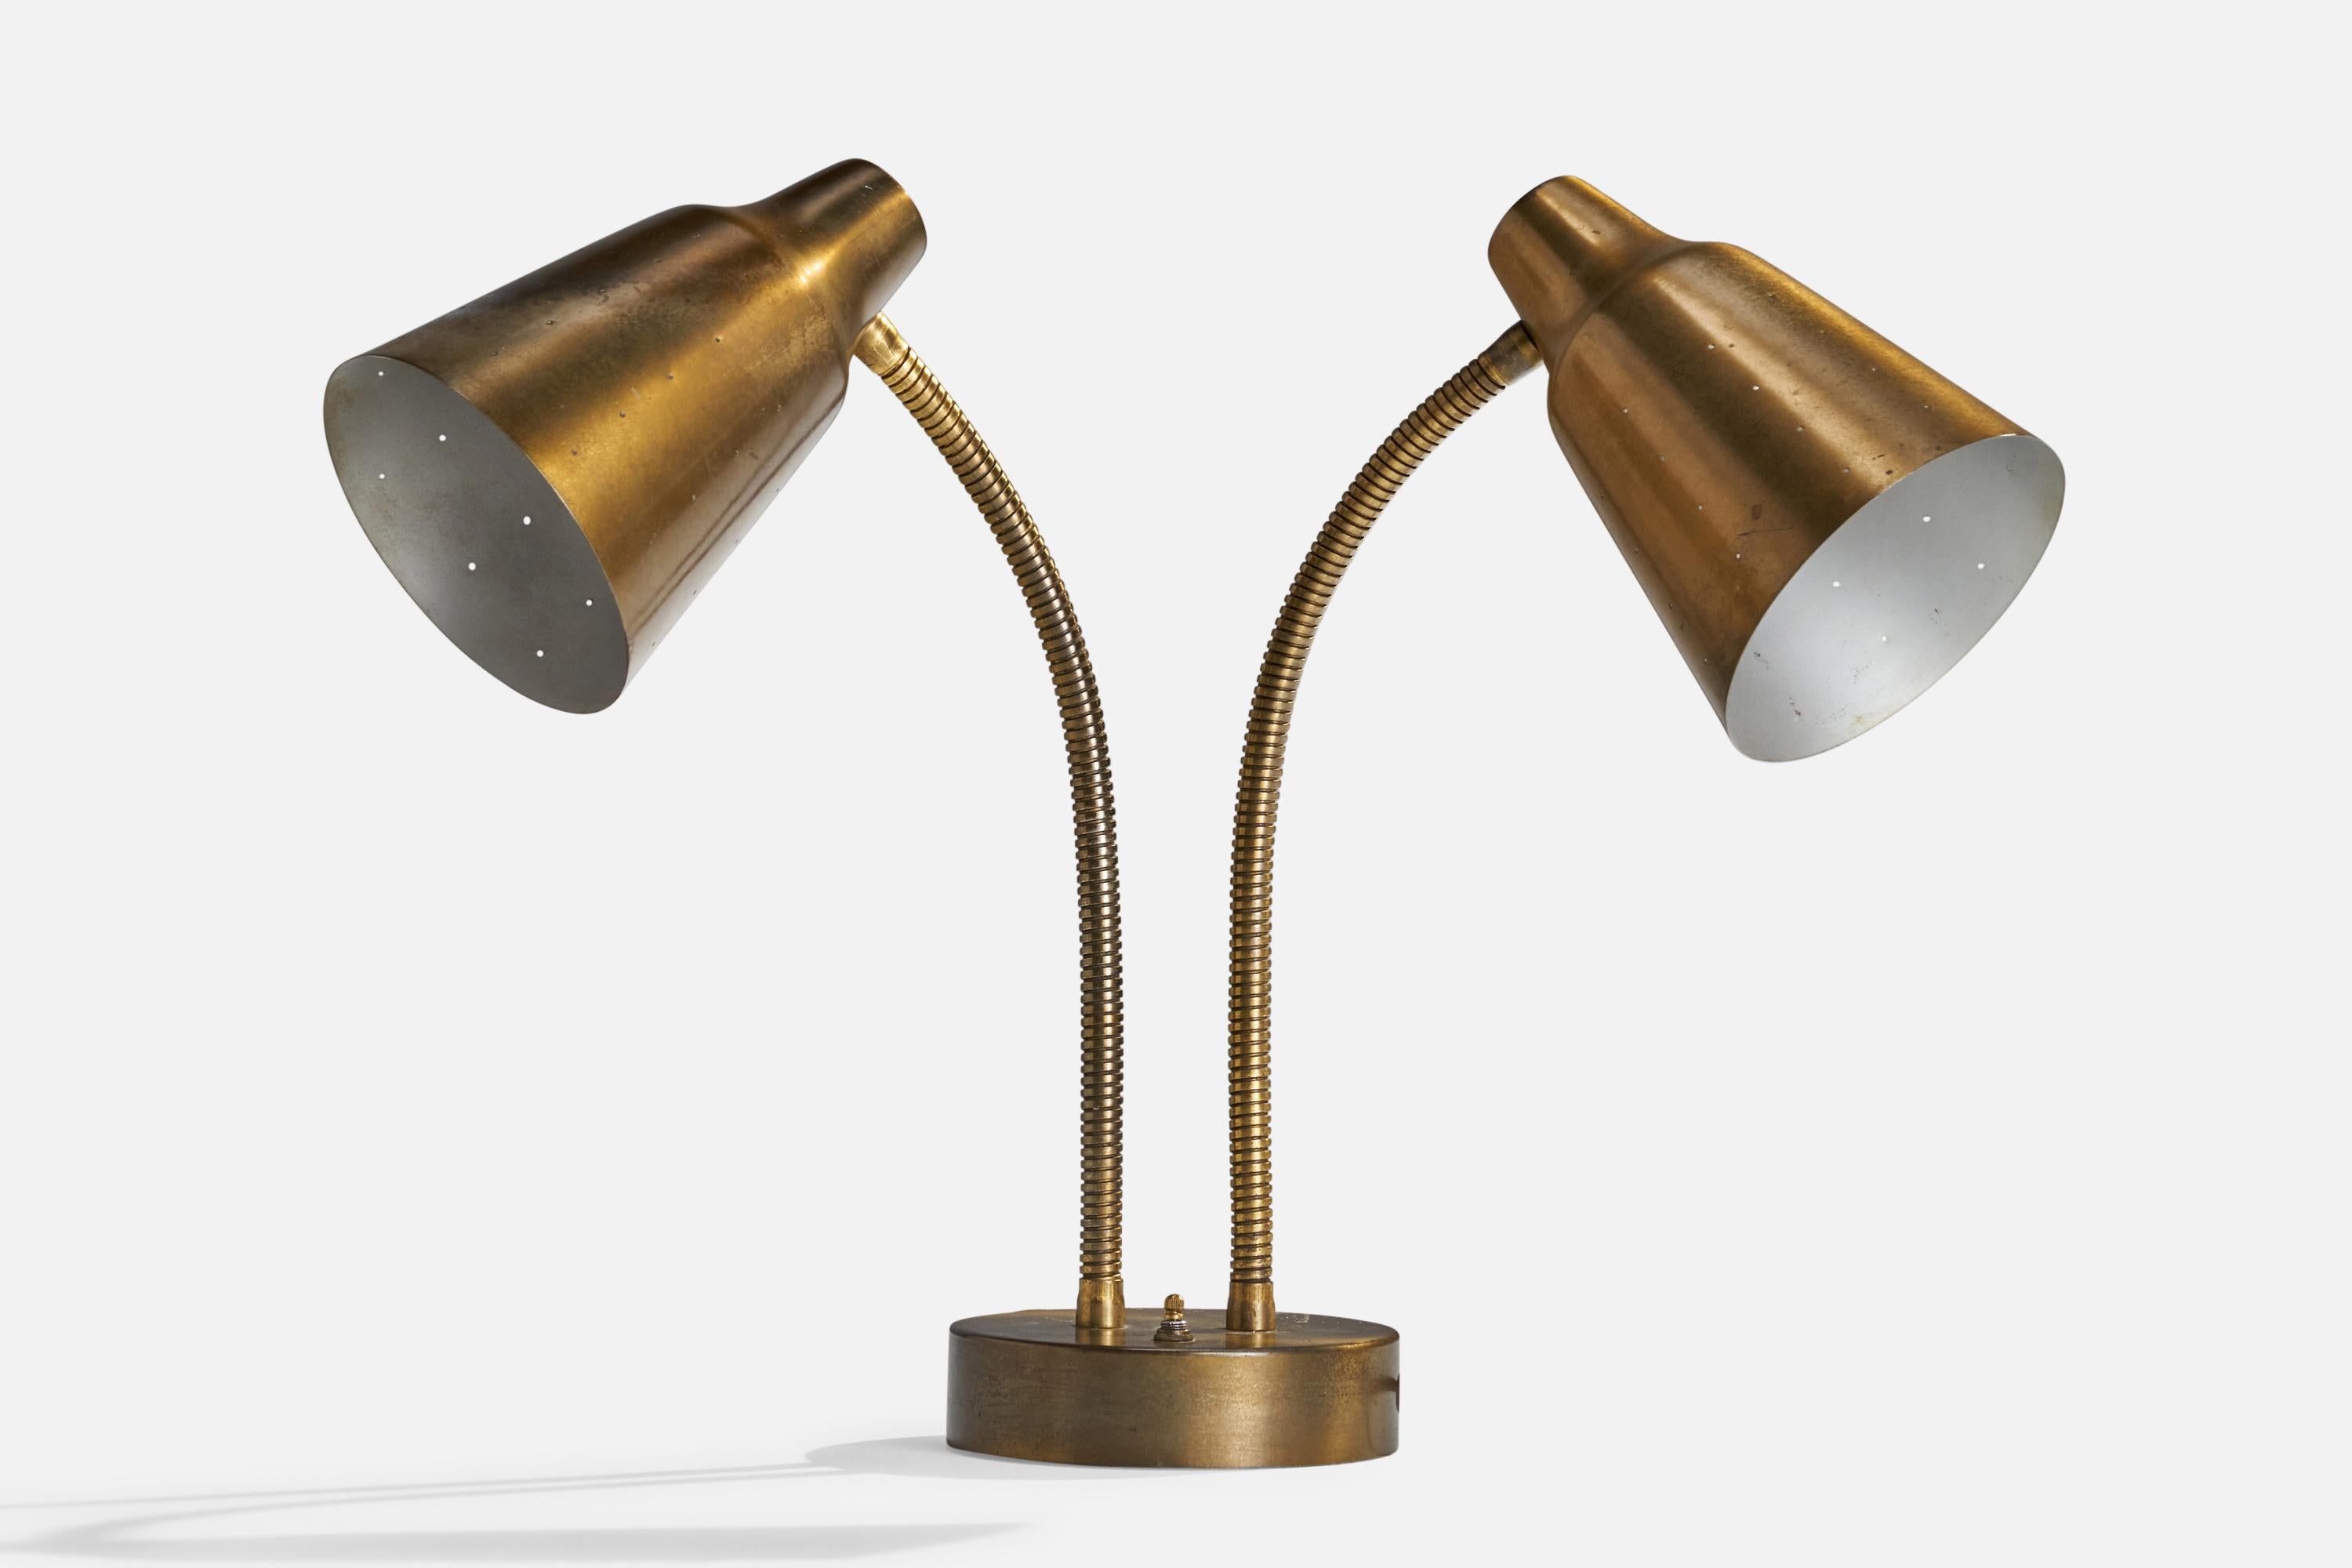 Lampe de table en laiton à deux bras, conçue et produite aux États-Unis, années 1950.

Dimensions globales (pouces) : 17